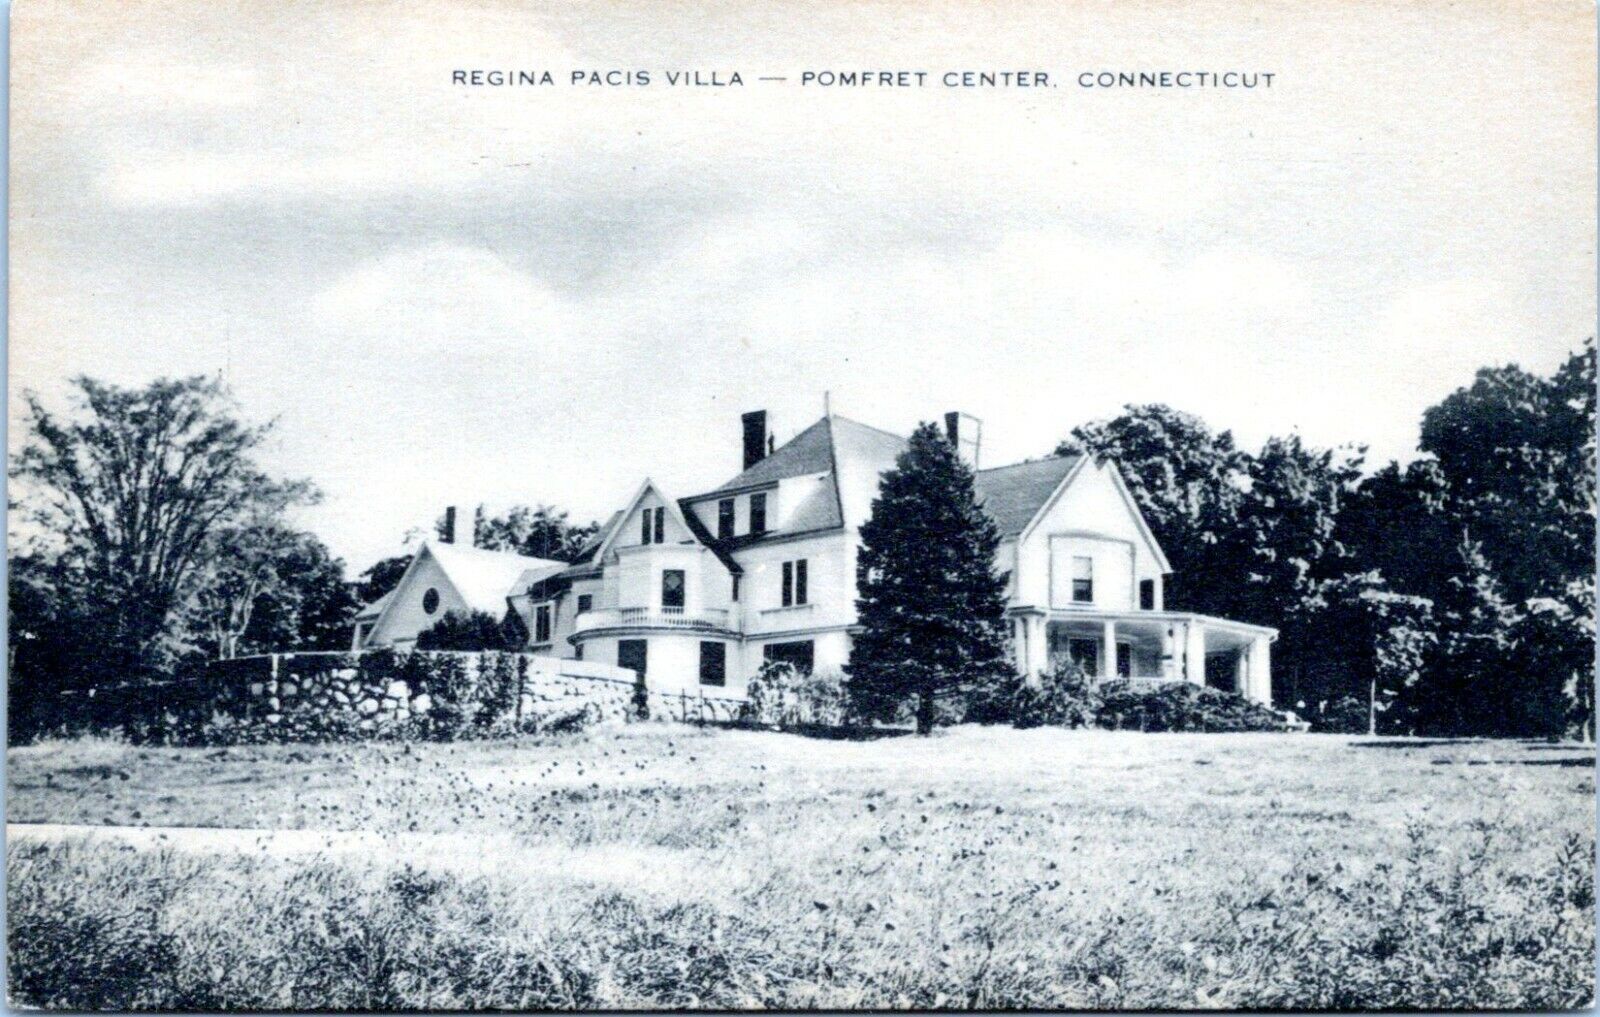 Pomfret Connecticut Postcard 1930s Regina Pacis Villa Pomfret Center NH